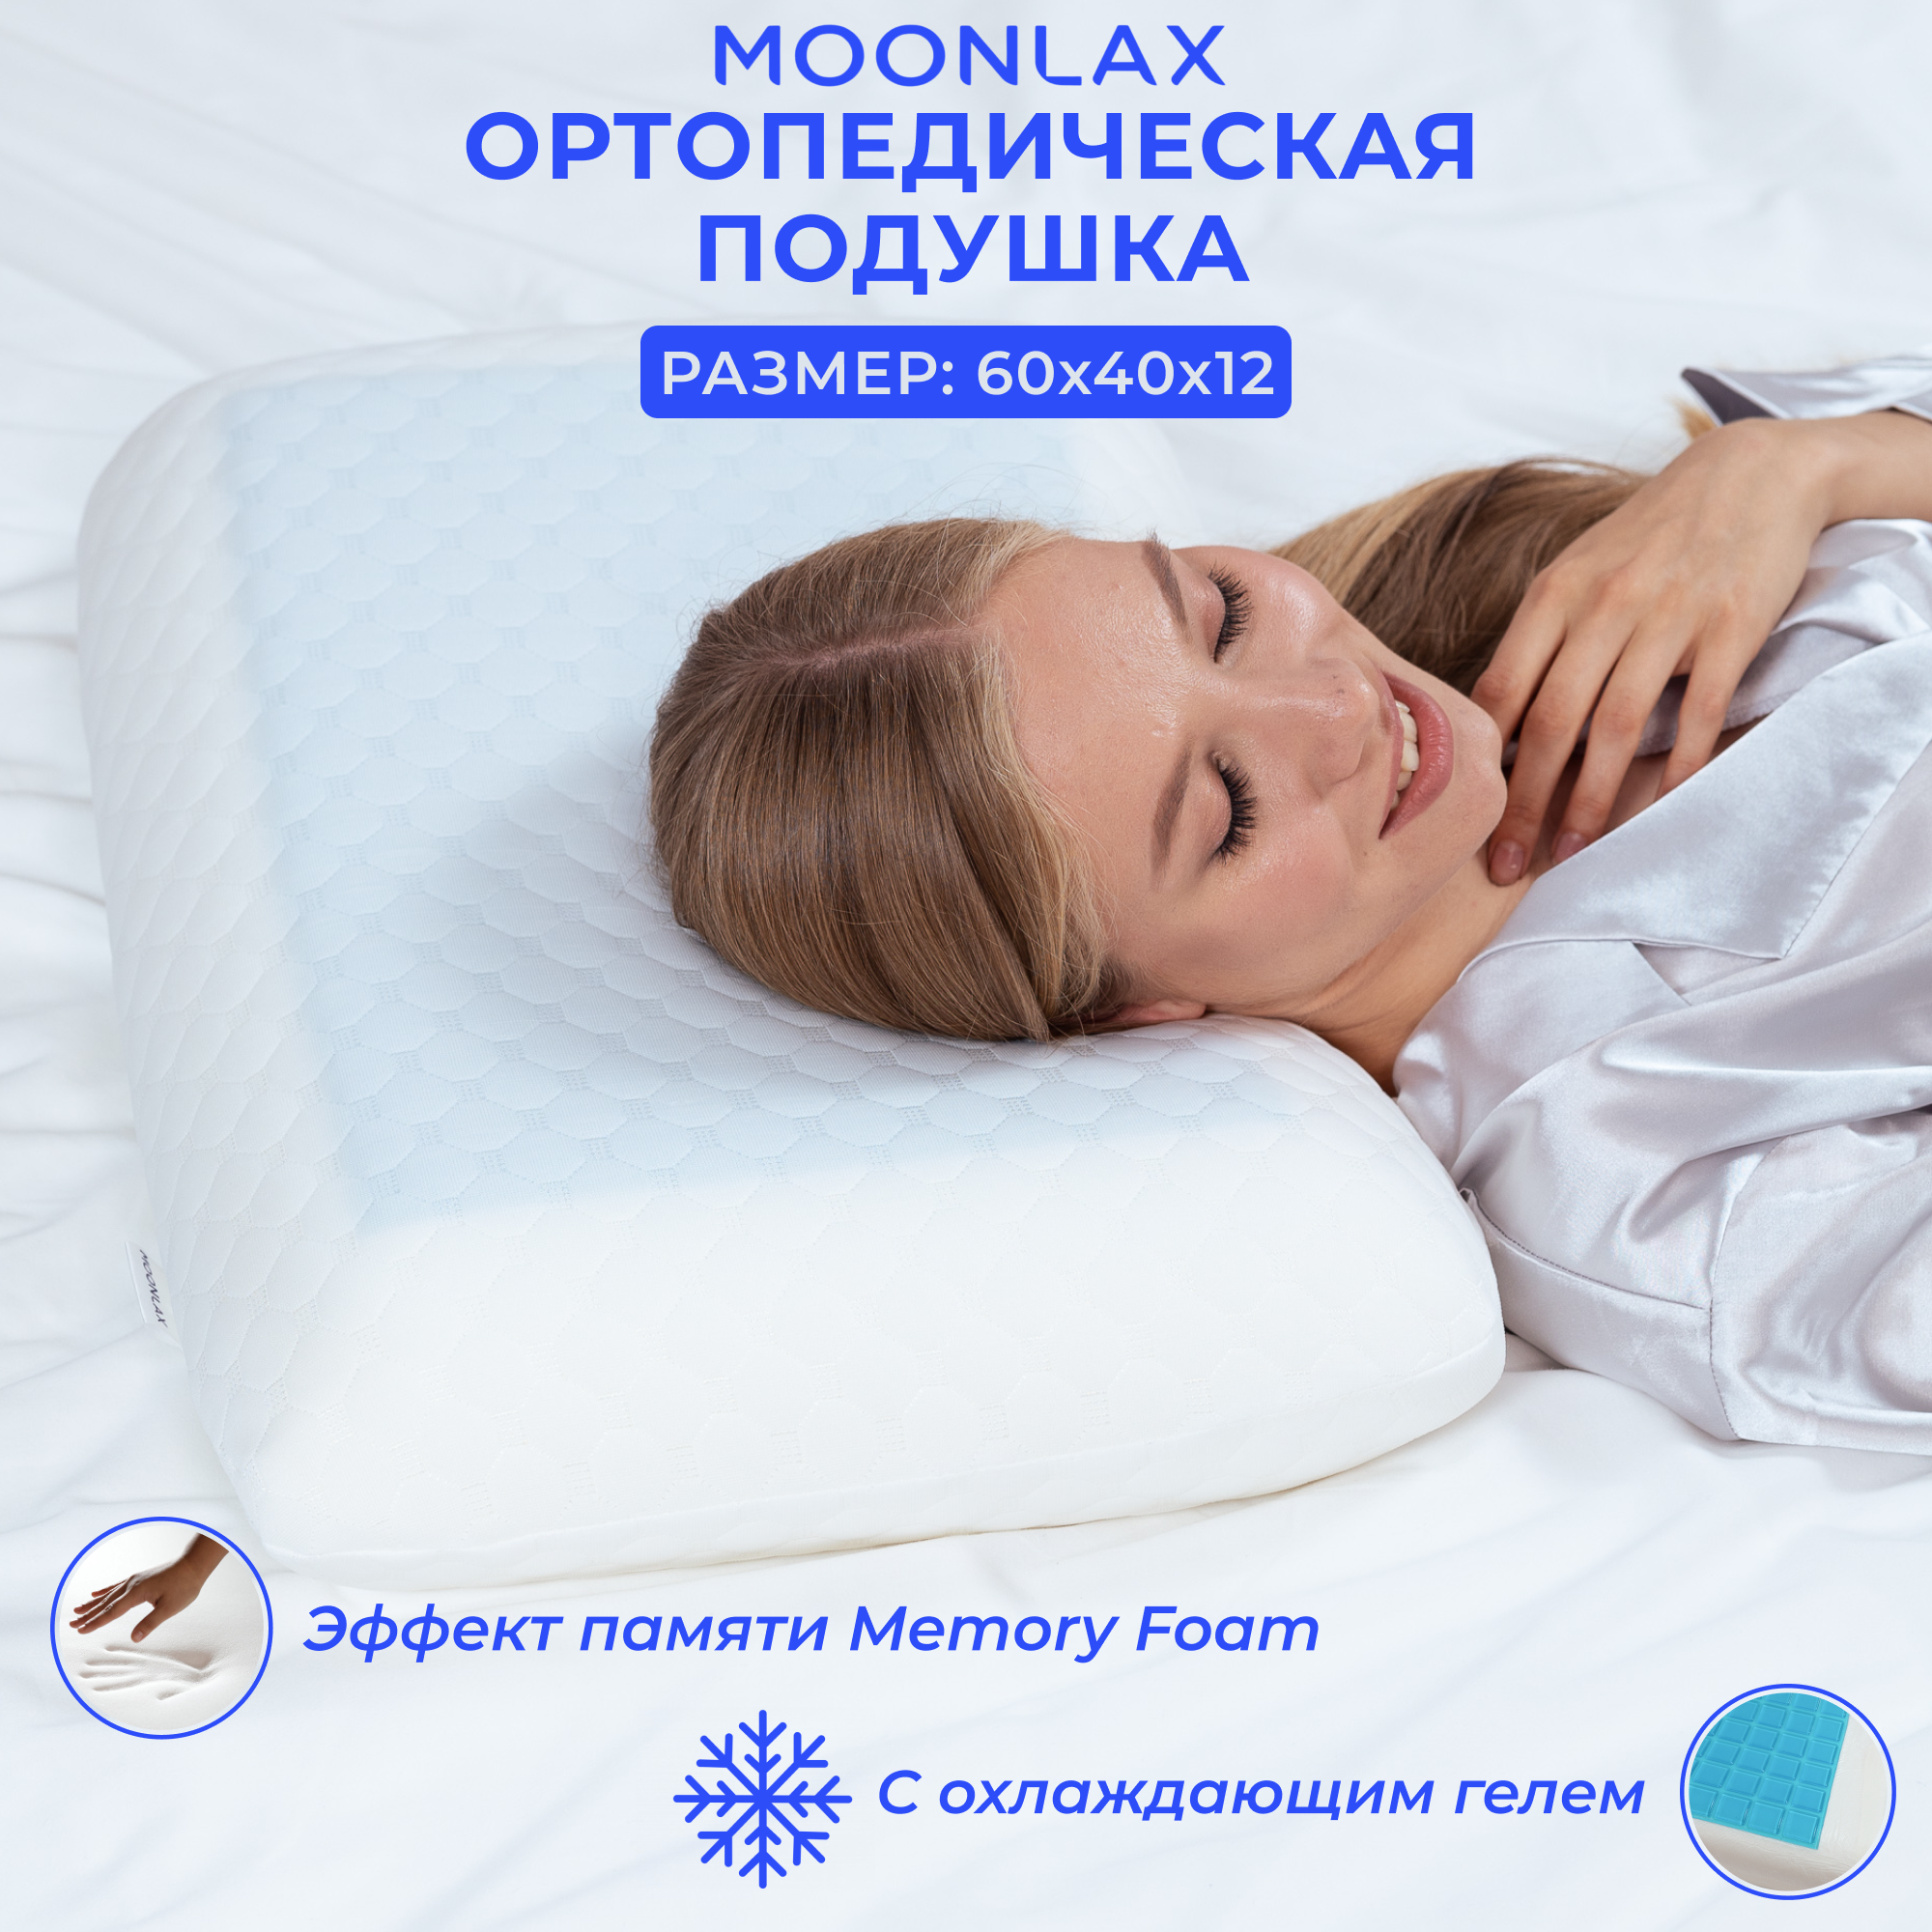 Подушка ортопедическая для сна 60x40x12 см охлаждающая, анатомическая с эффектом памяти Memory Foam